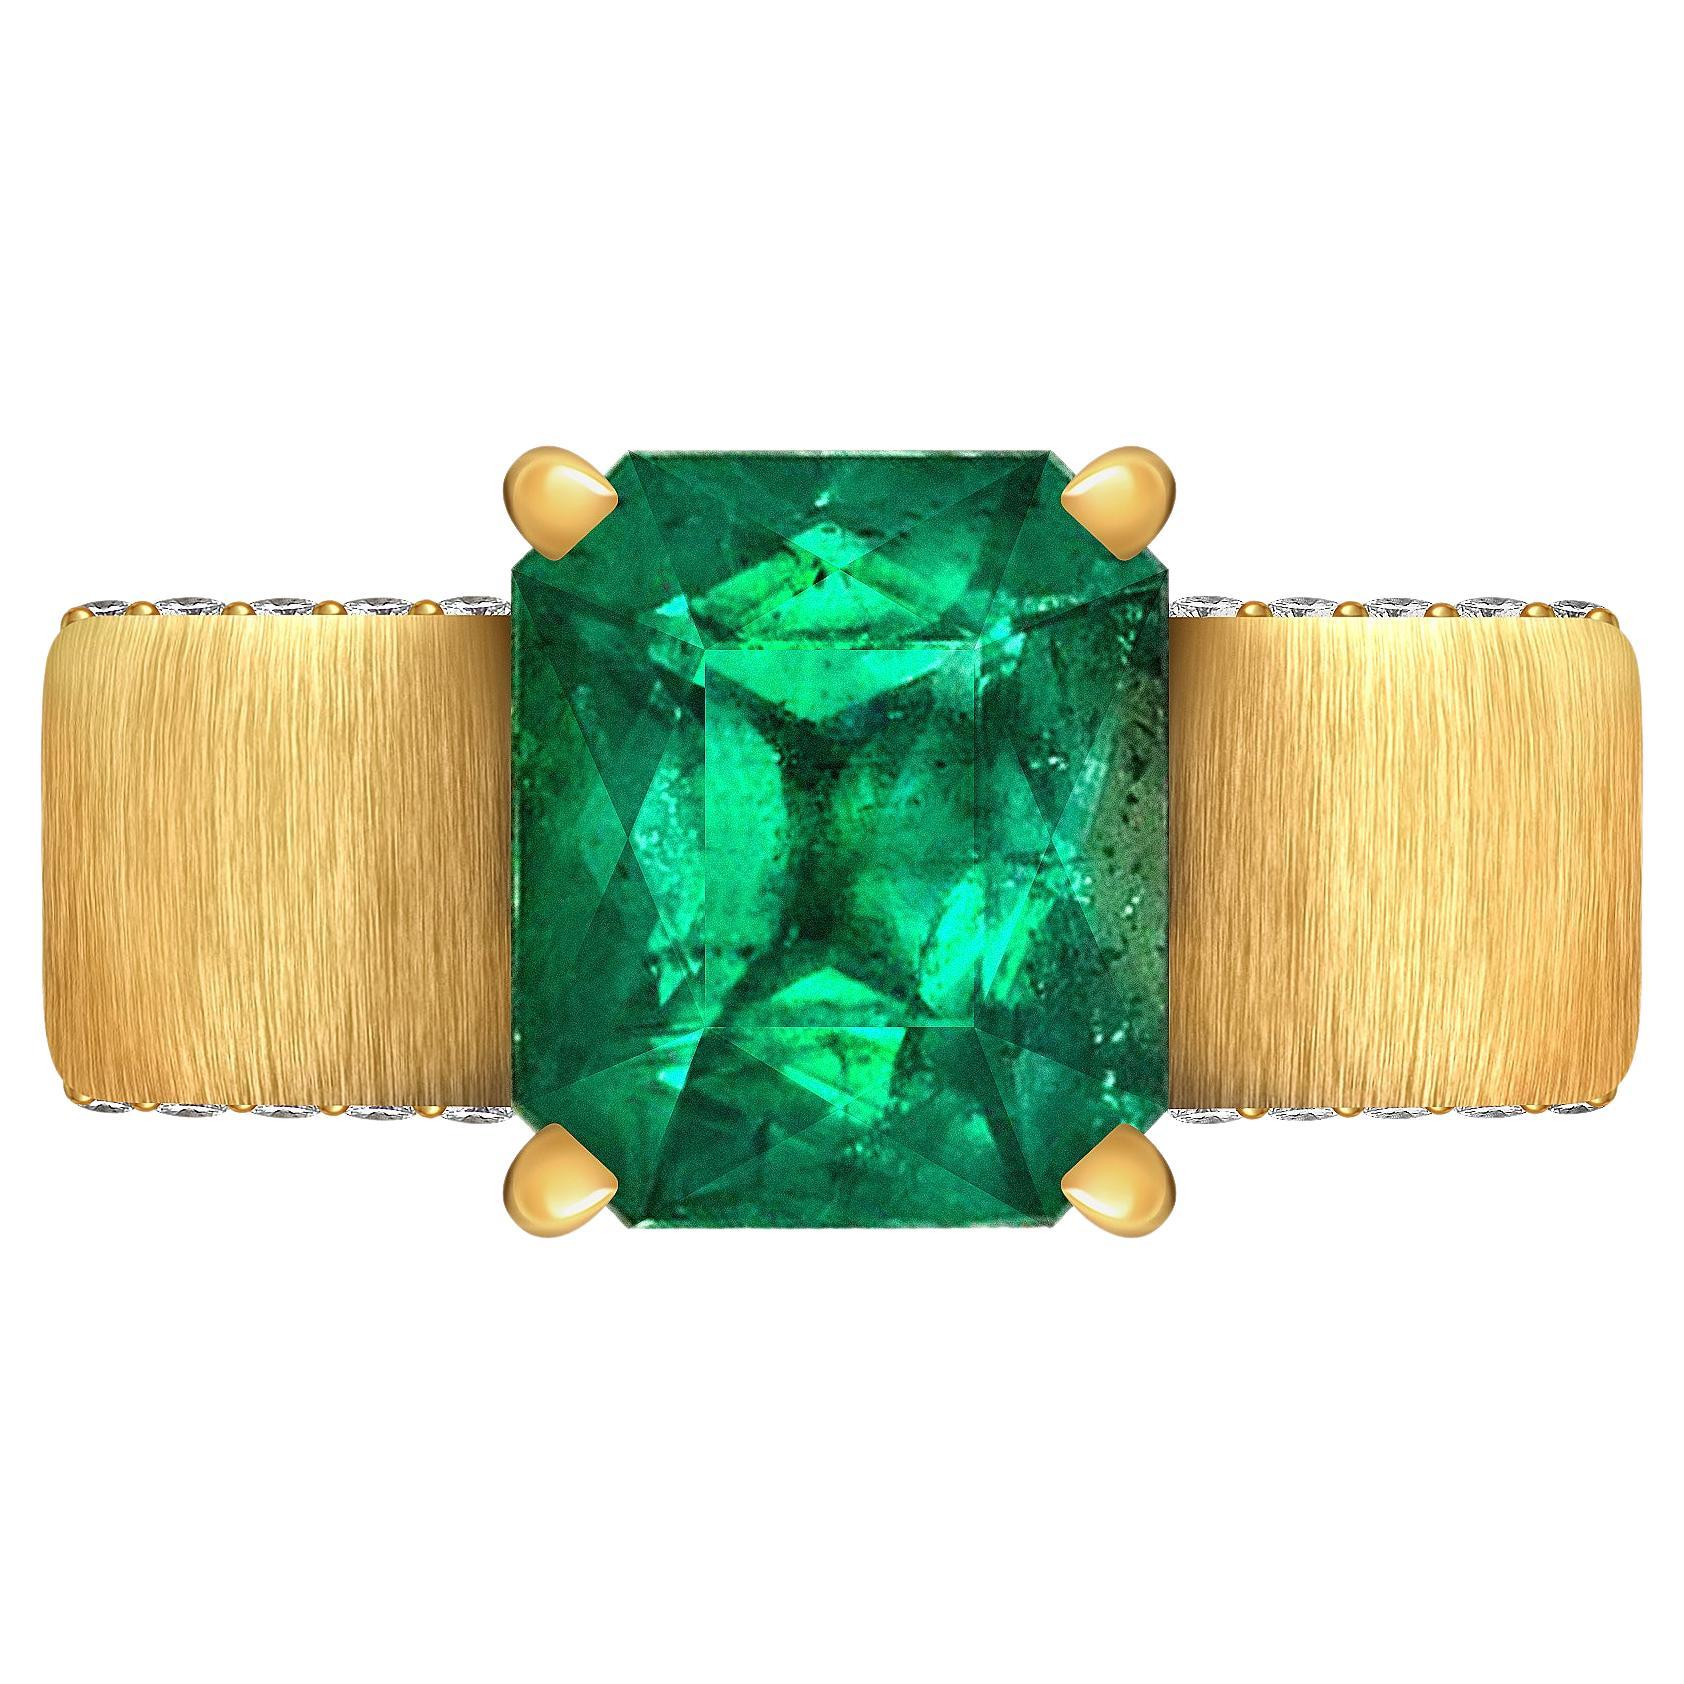 3.92 Carat Natural Emerald Diamond 18 Karat Yellow Gold Ring "Sahara" by D&A For Sale